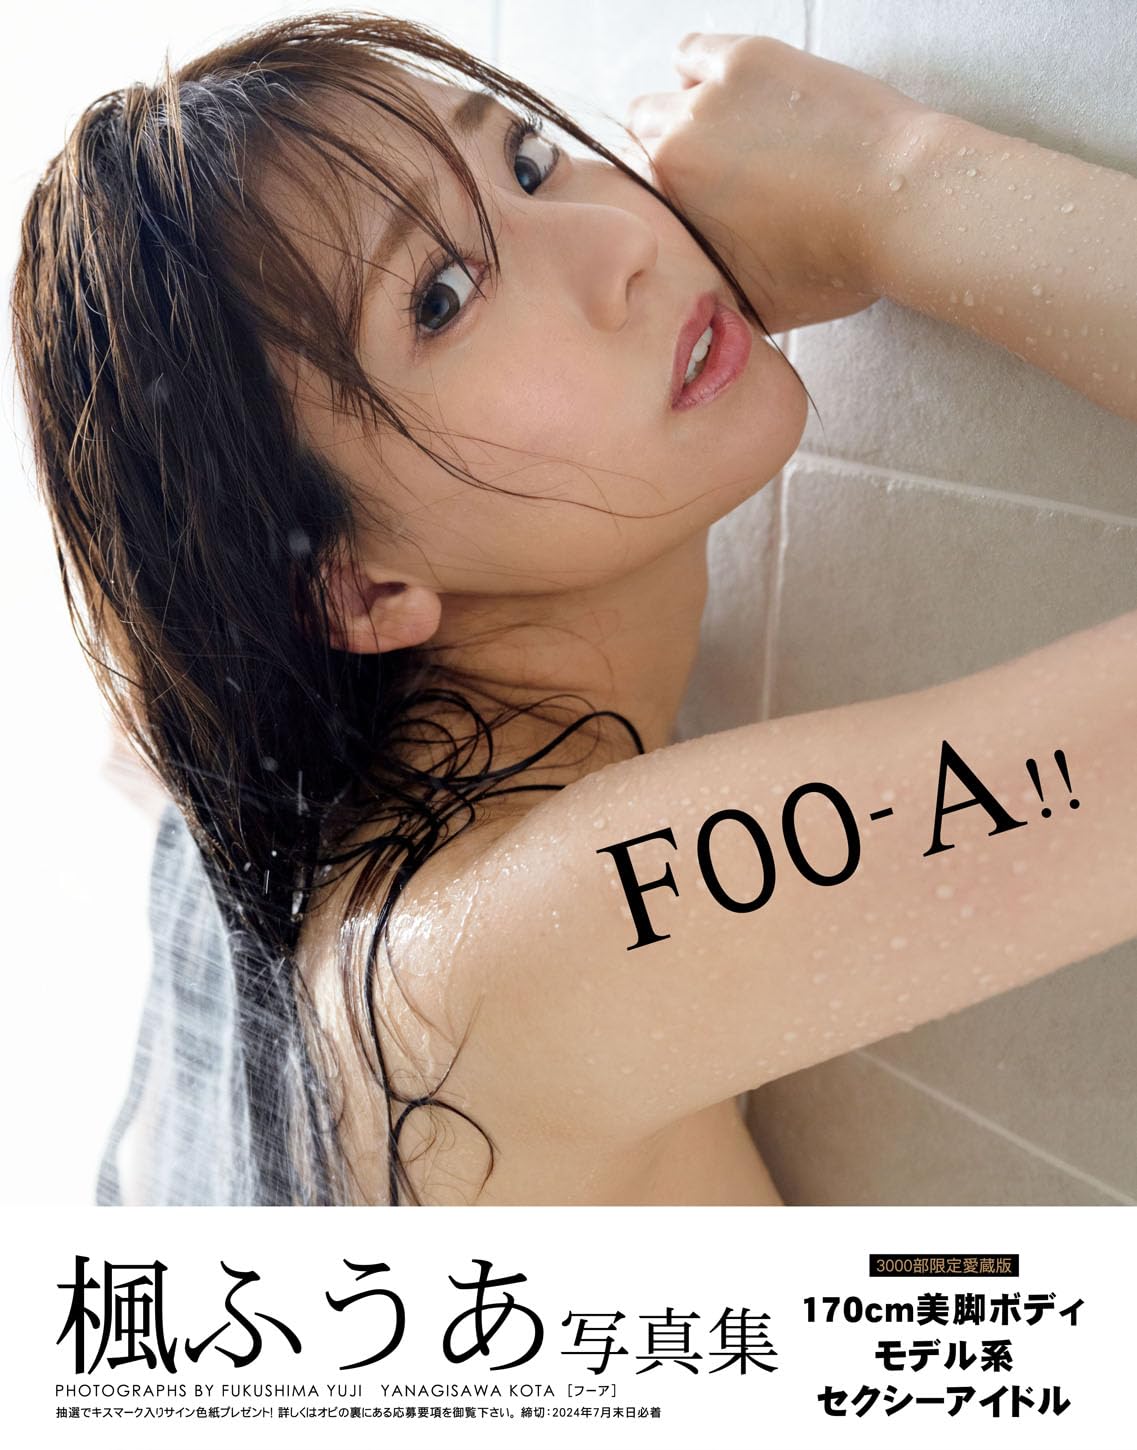 楓ふうあ写真集「FOO-A！！」【豪華愛蔵版3000部限定】のサンプル画像